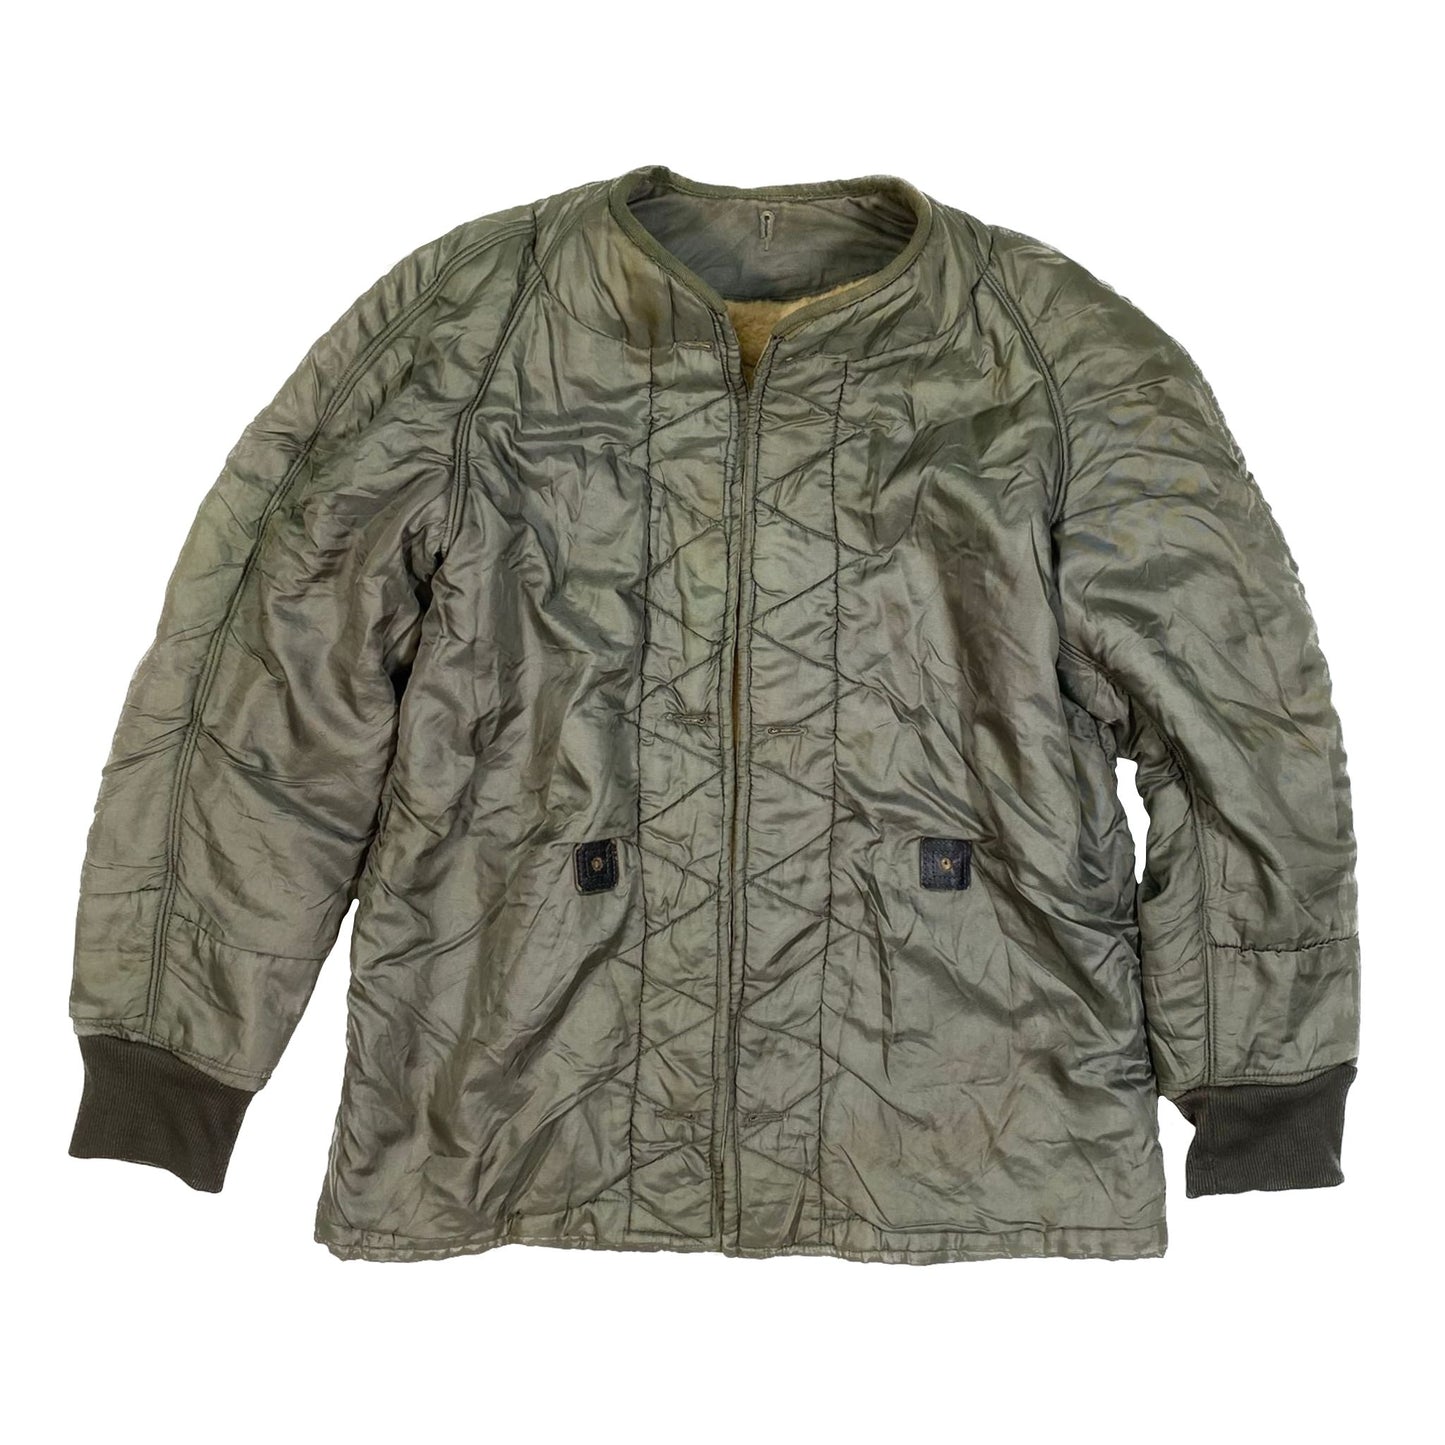 USAF Liner, Wind Resistant Cotton Satten Jacket Coat, sherpa, size MR